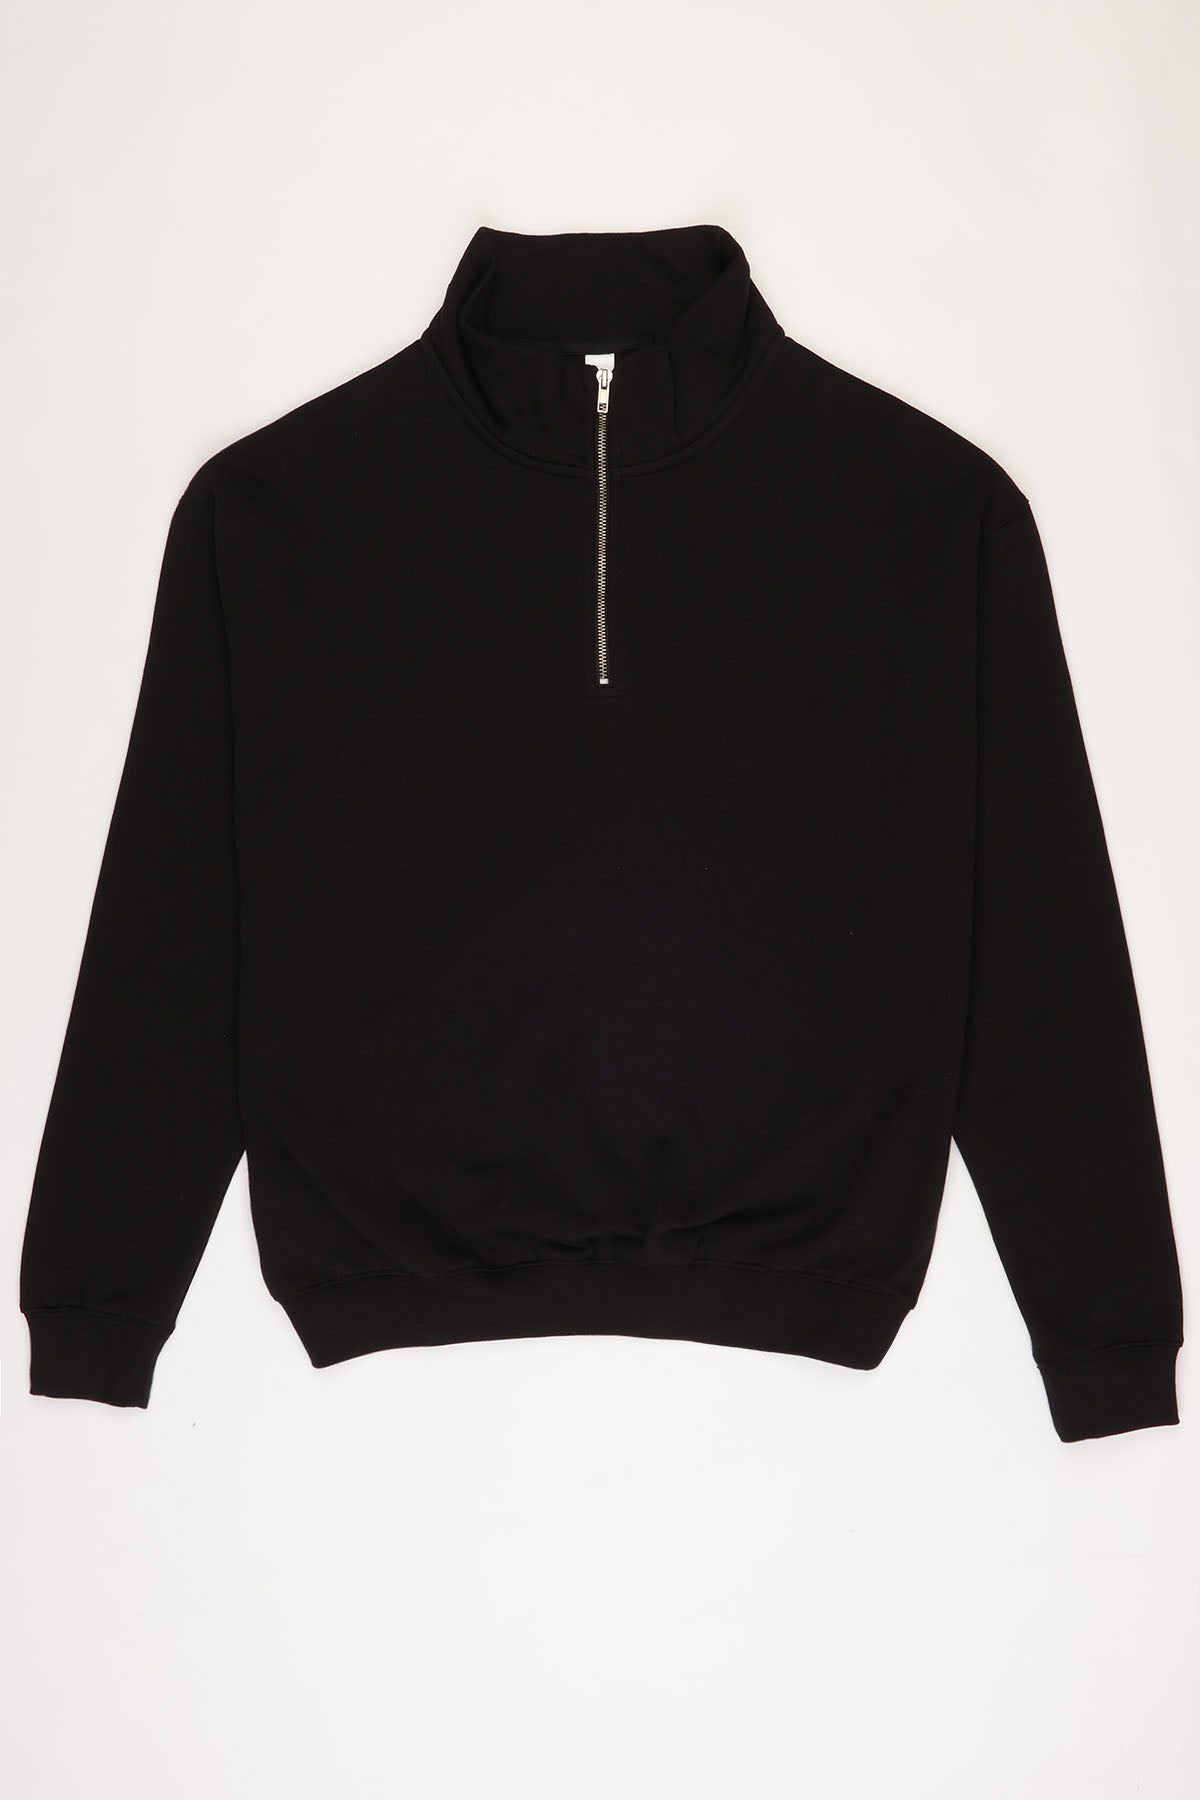 1/4 Zip LSF Fleece Tracksuit in Black